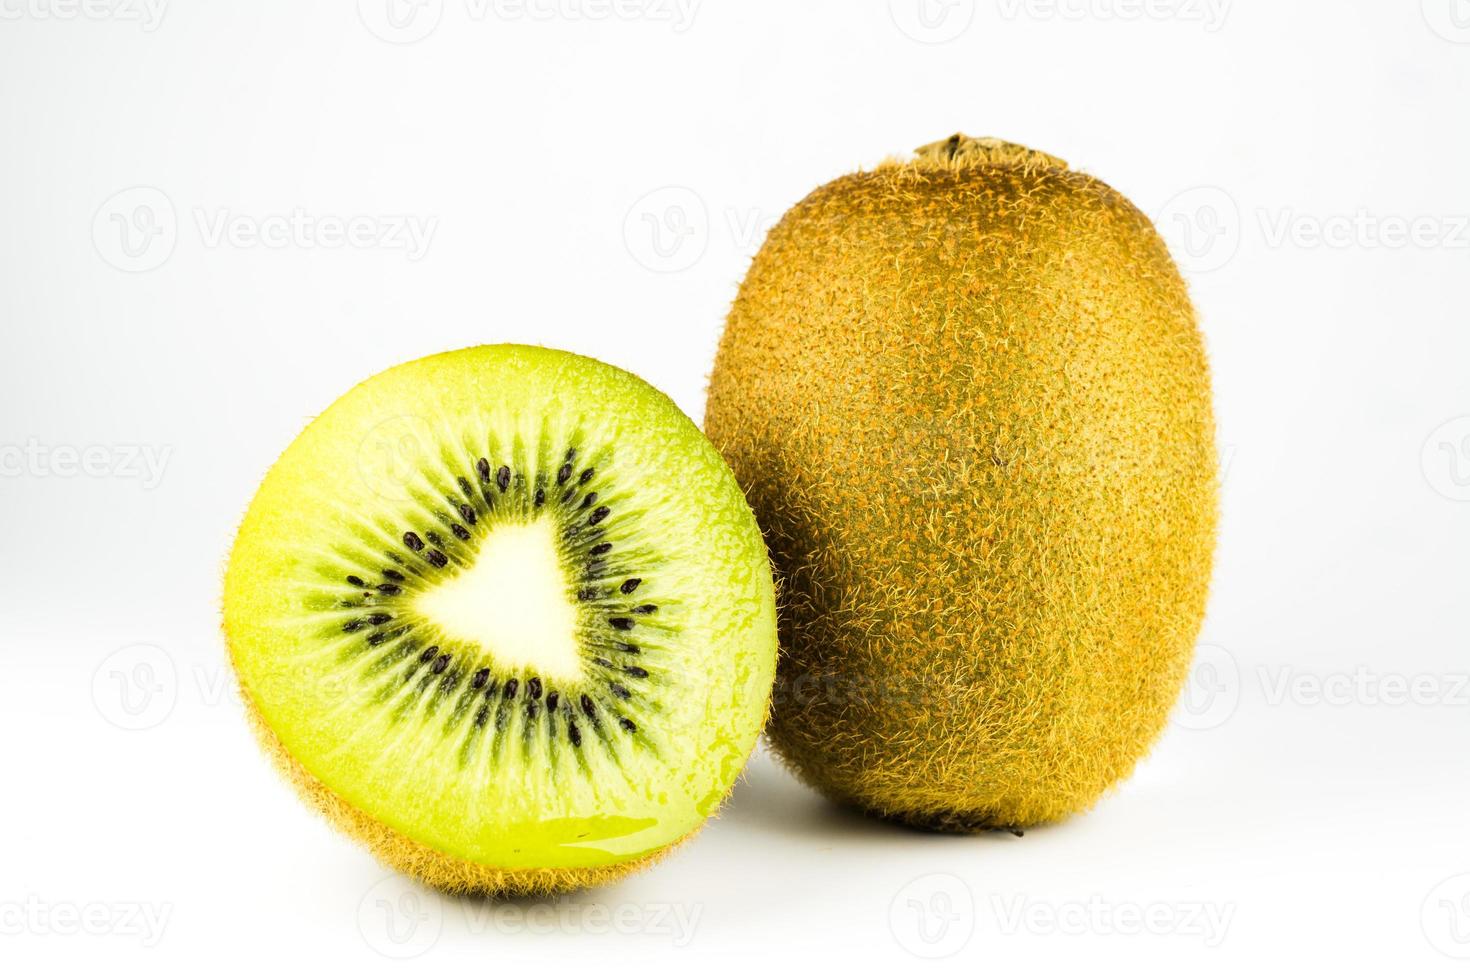 kiwi fruit on white background photo